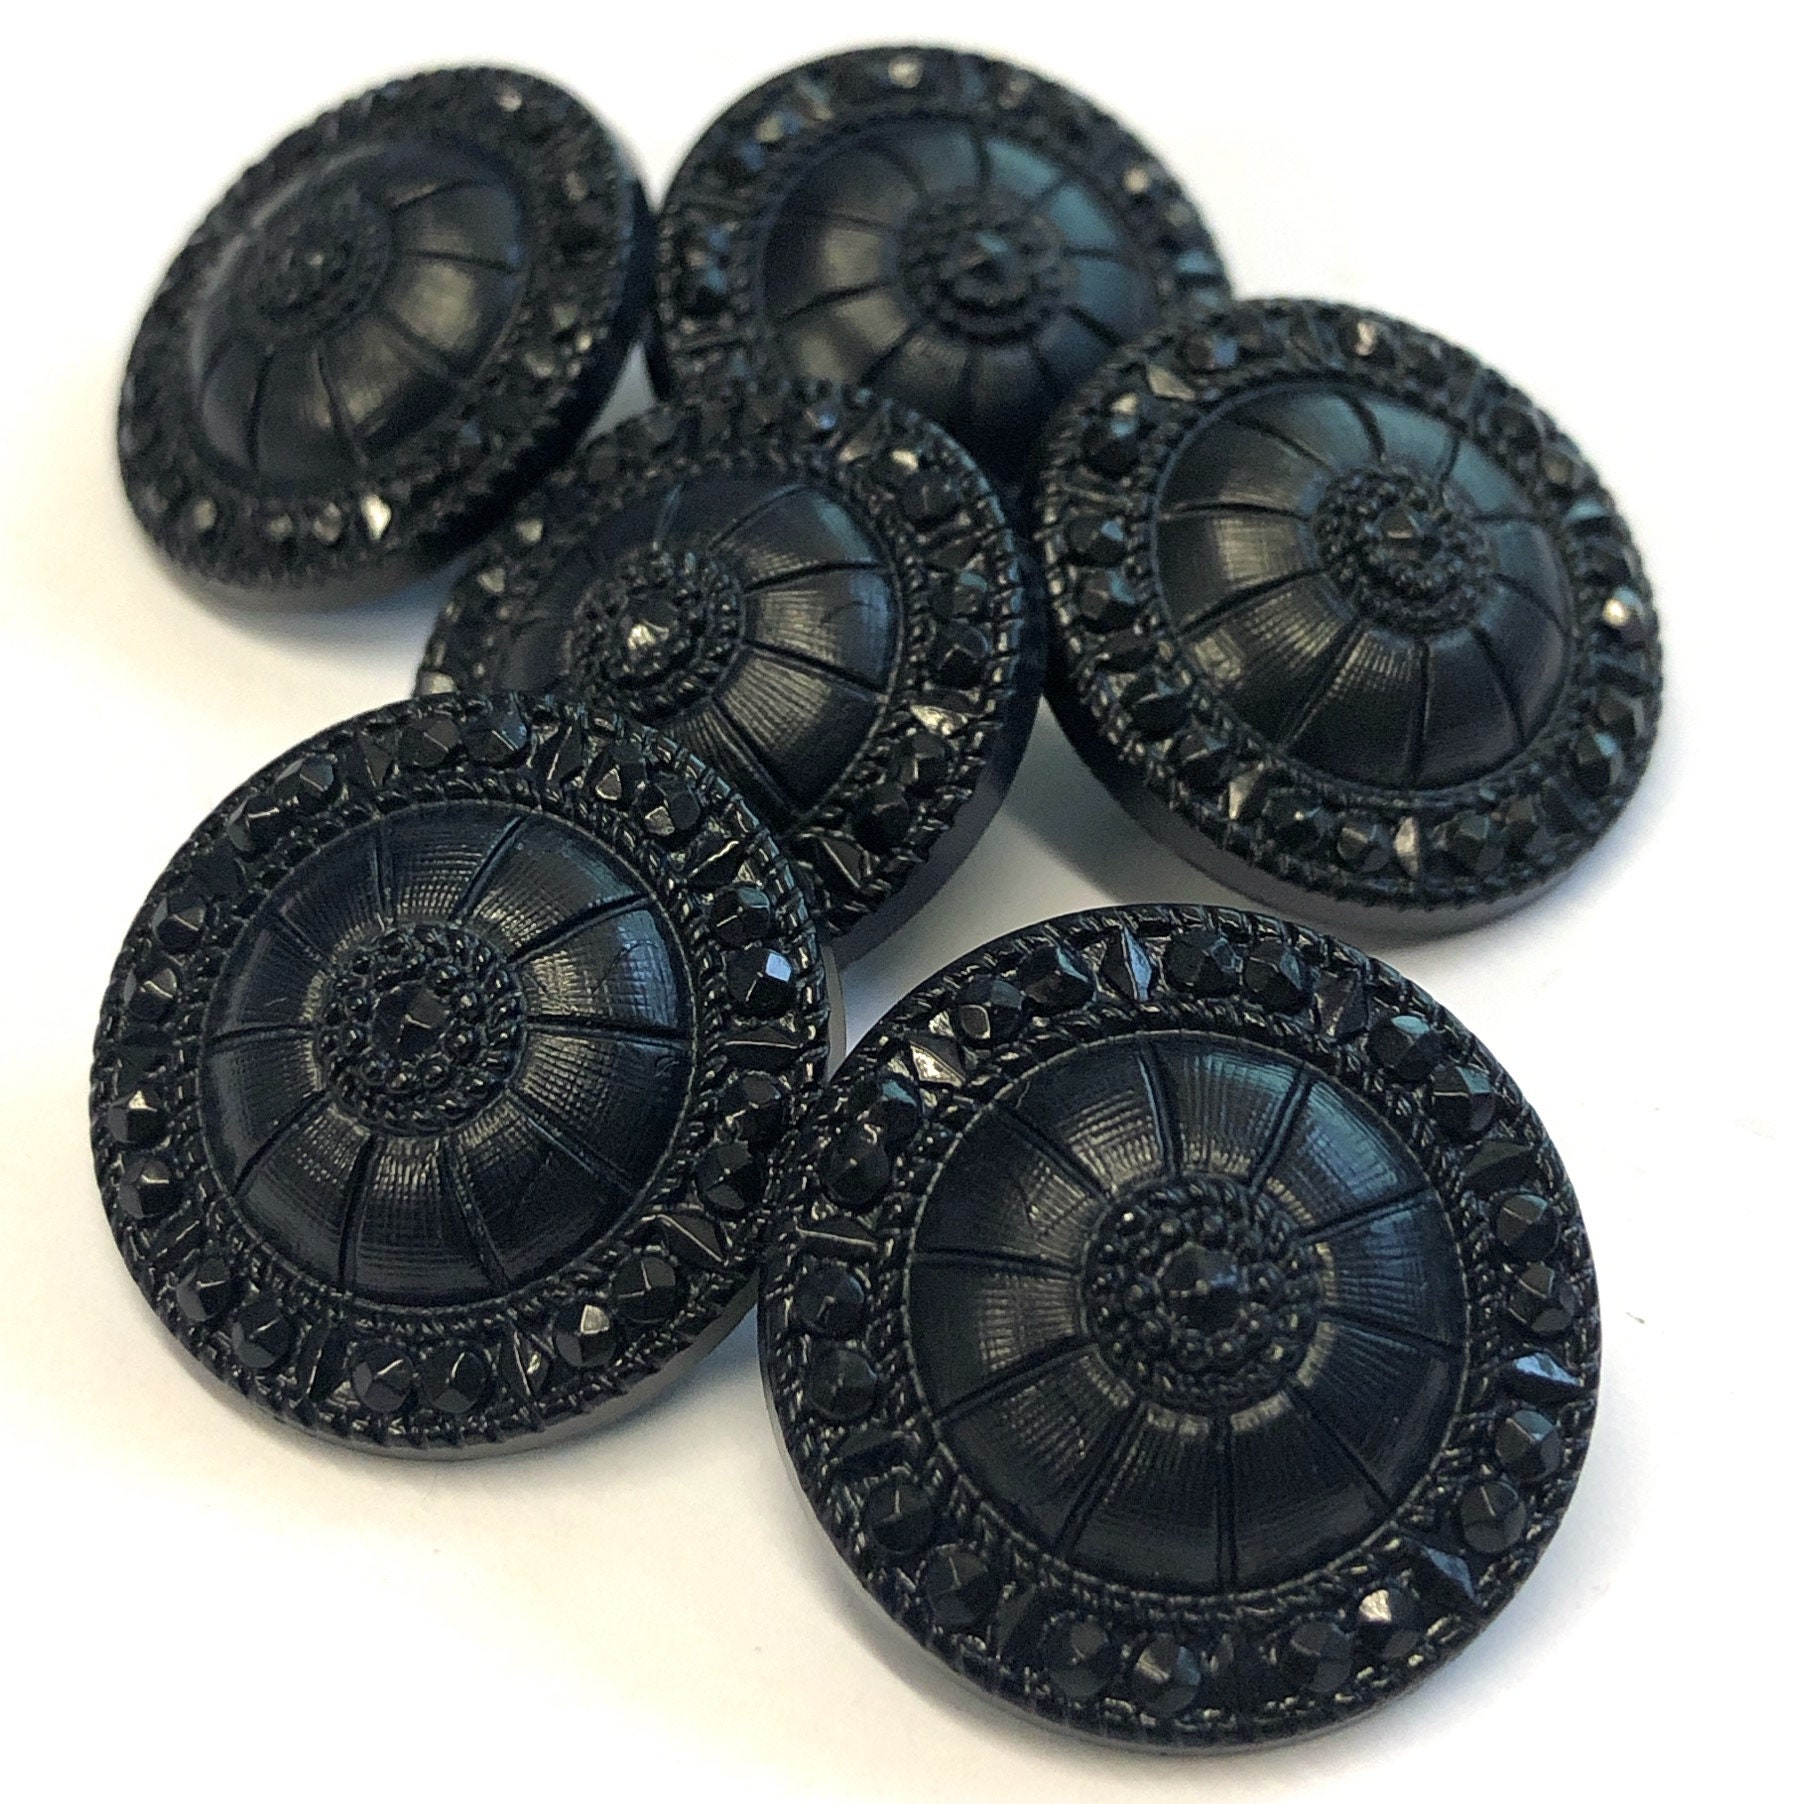 Mixed 50g Bag Dark Blue Buttons 